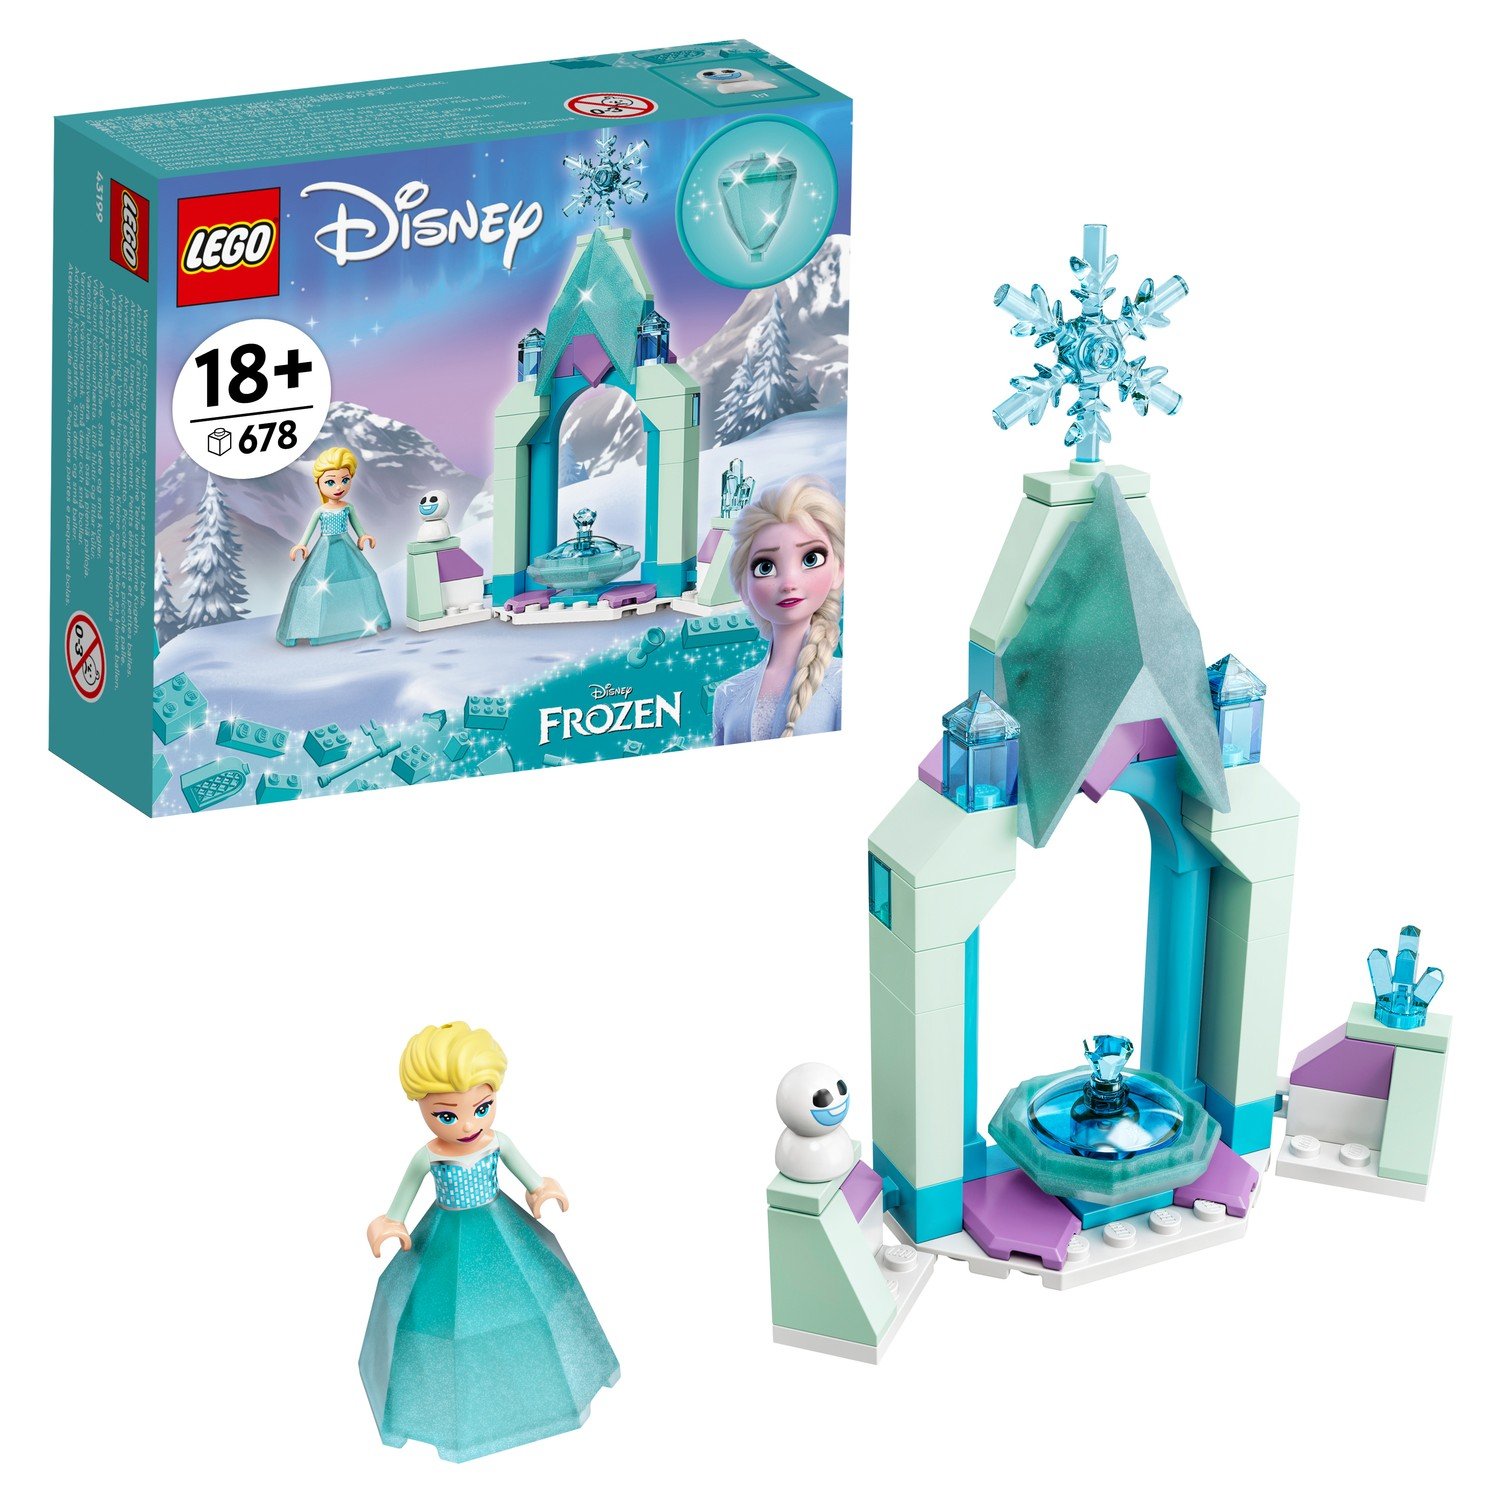 LEGO Disney Princess Frozen Двор замка Эльзы 43199 конструктор lego disney princess двор замка эльзы 43199